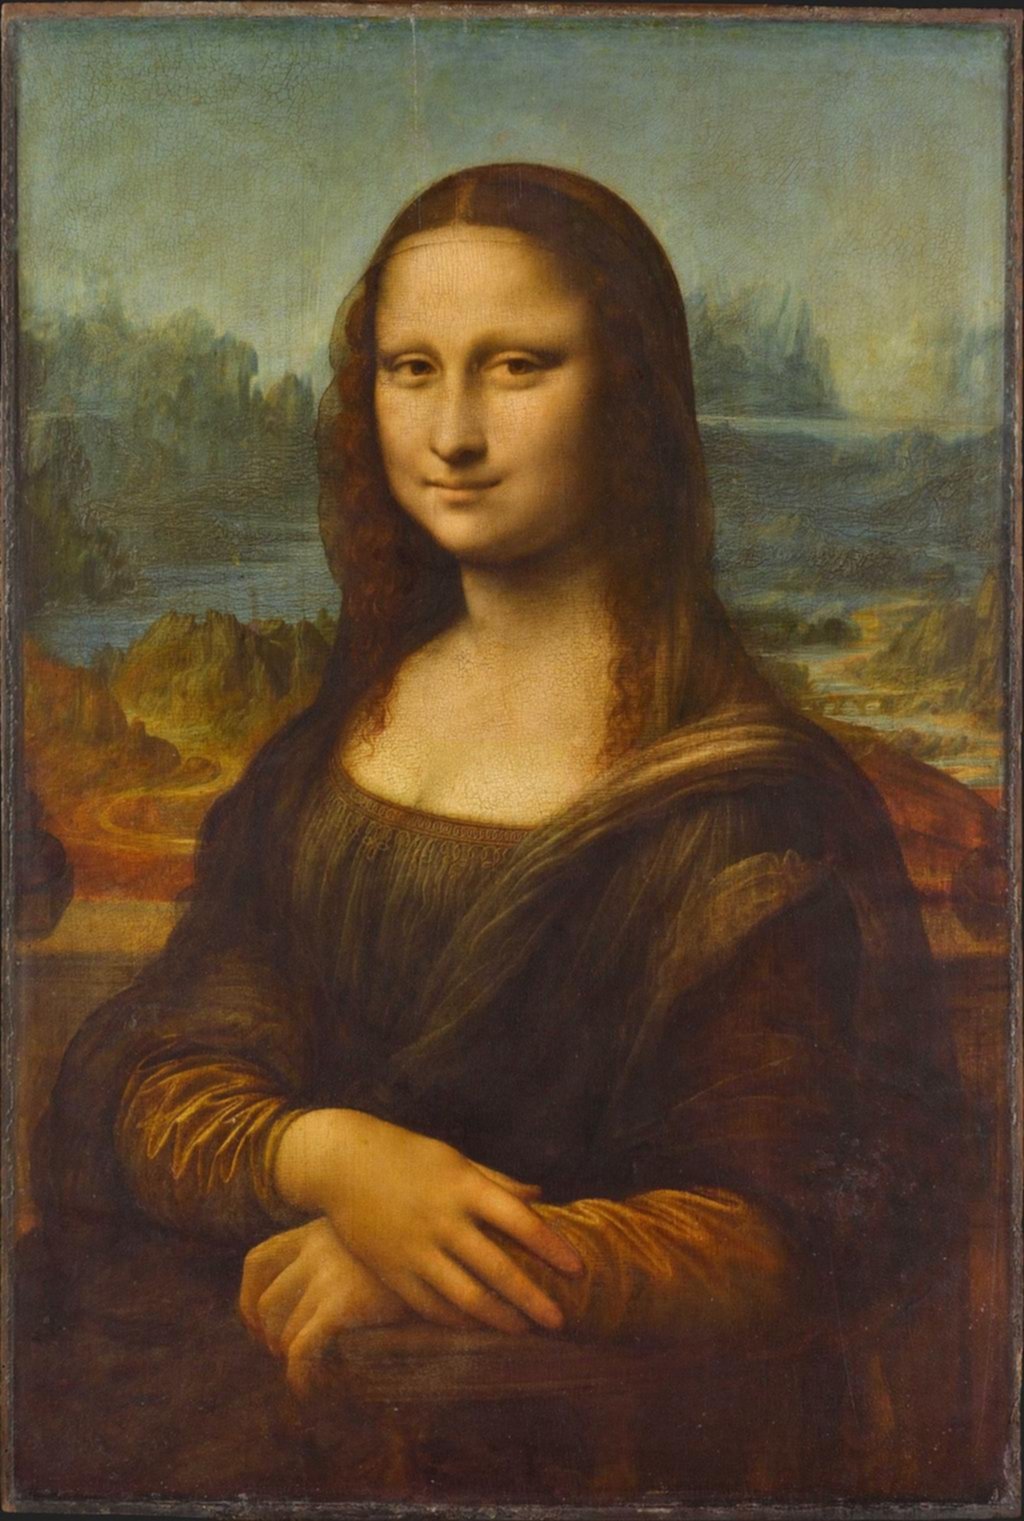 Da Vinci y “La Gioconda”, con estrabismo